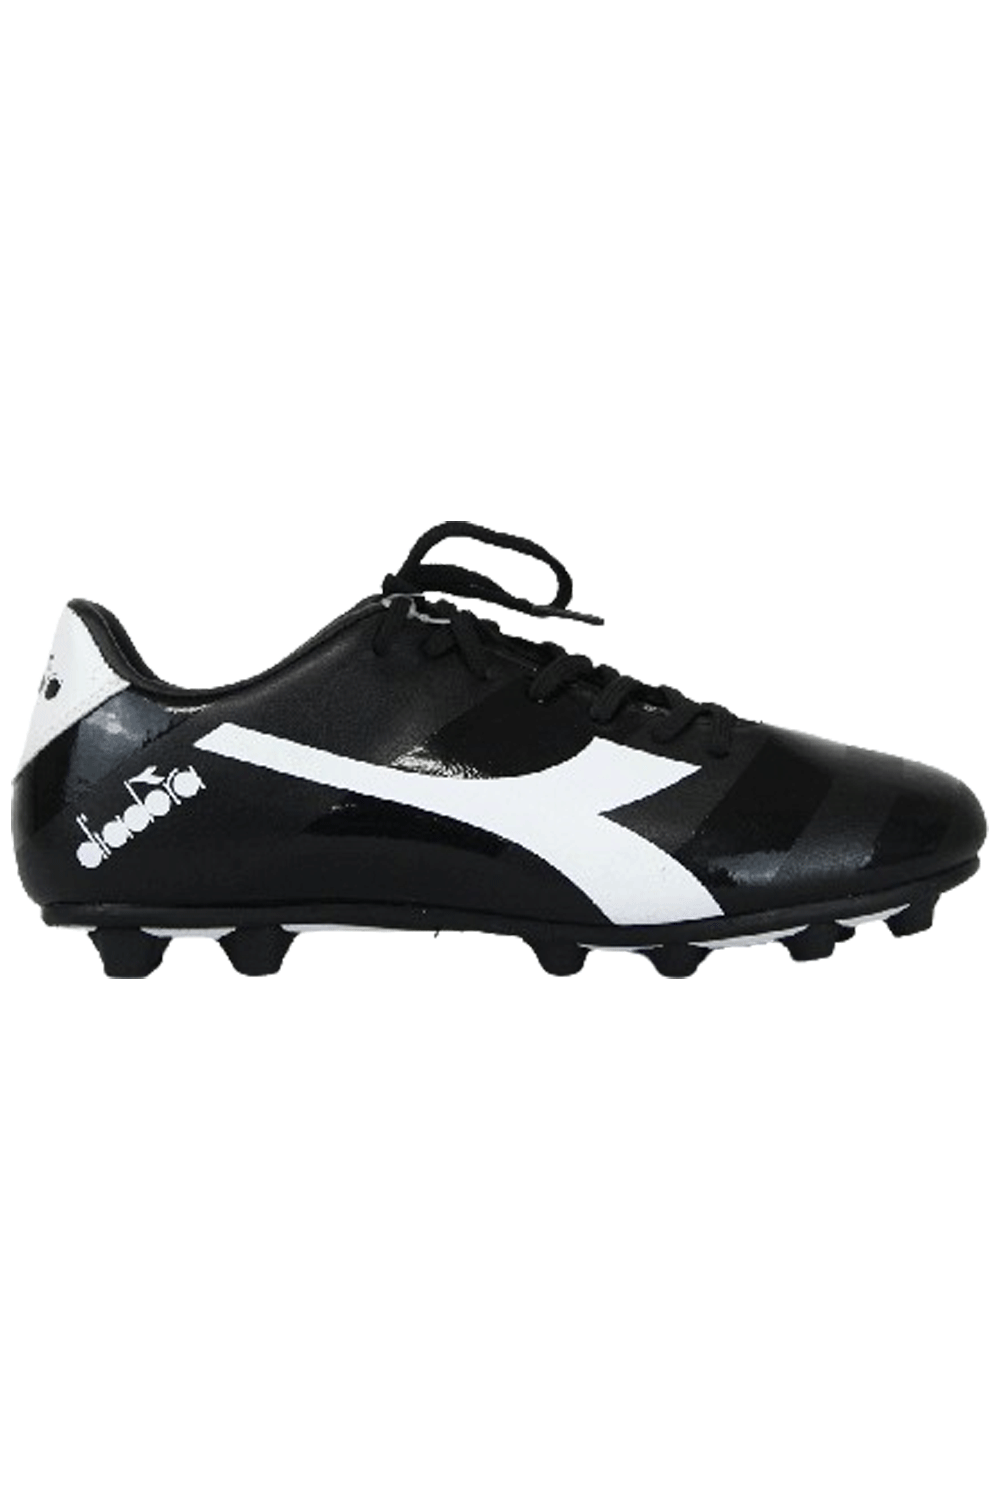 Diadora Dynamo Soccer Black Boots